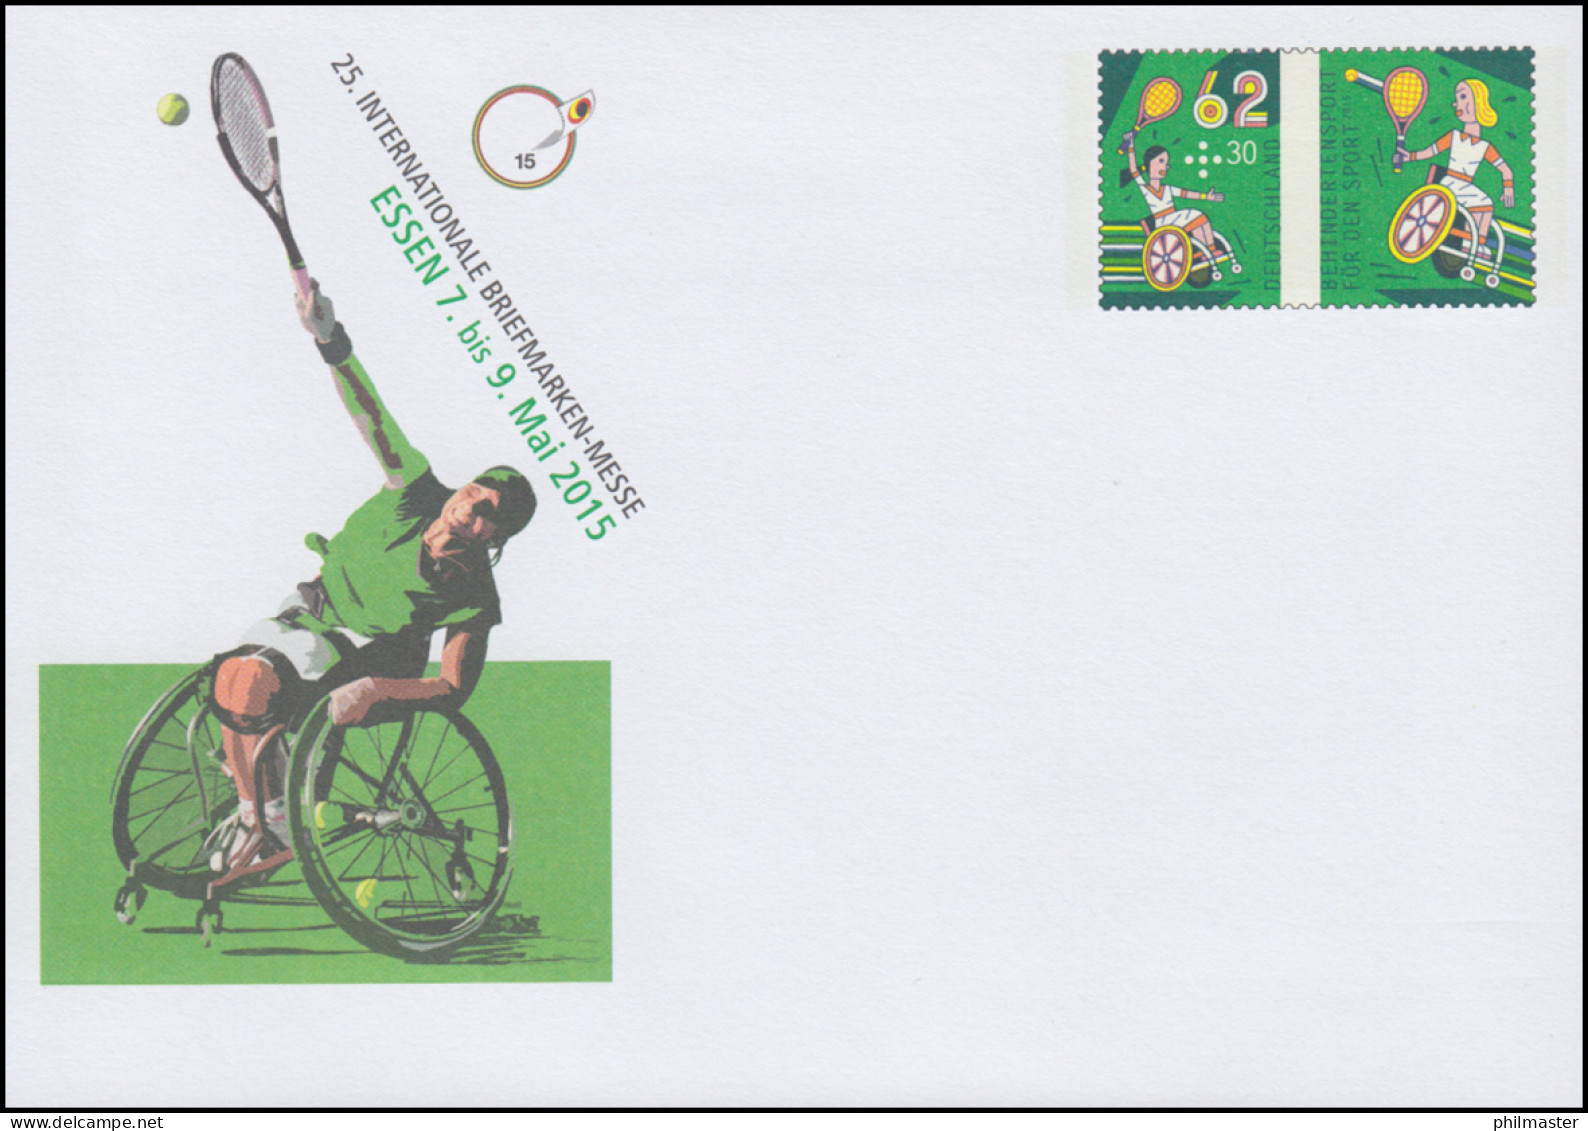 USo 360 Briefmarken-Messe Essen - Rollstuhltennis 2015, ** - Covers - Mint